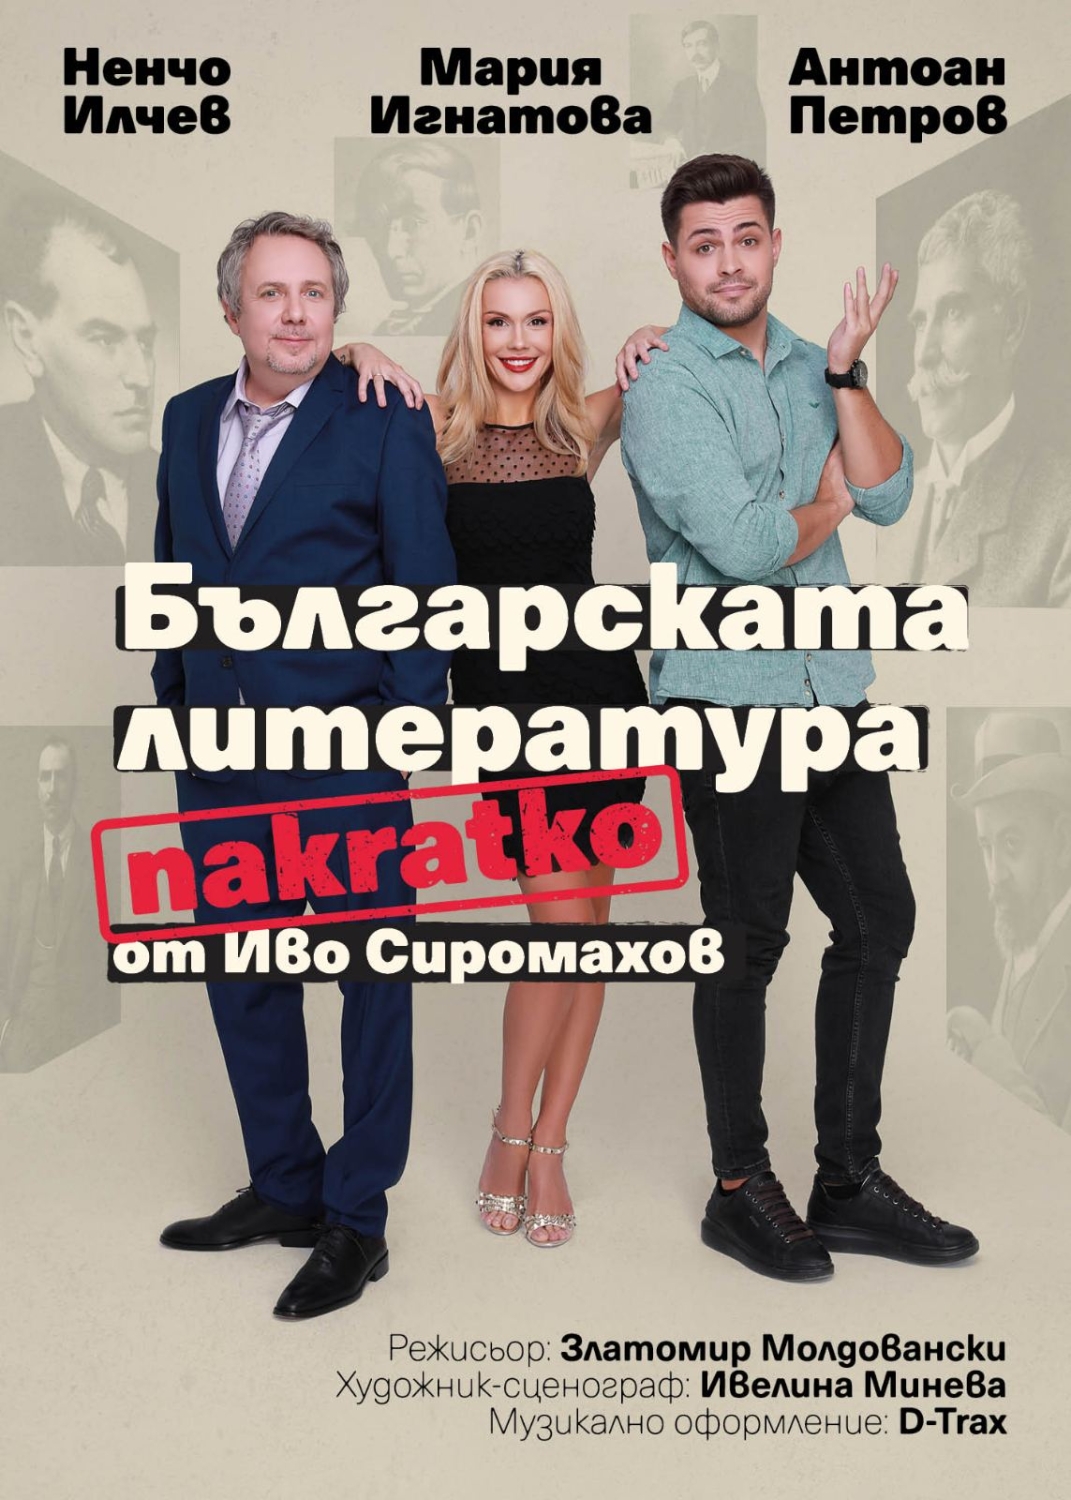 БЪЛГАРСКАТА ЛИТЕРАТУРА НАКРАТКО - комедия във Варна